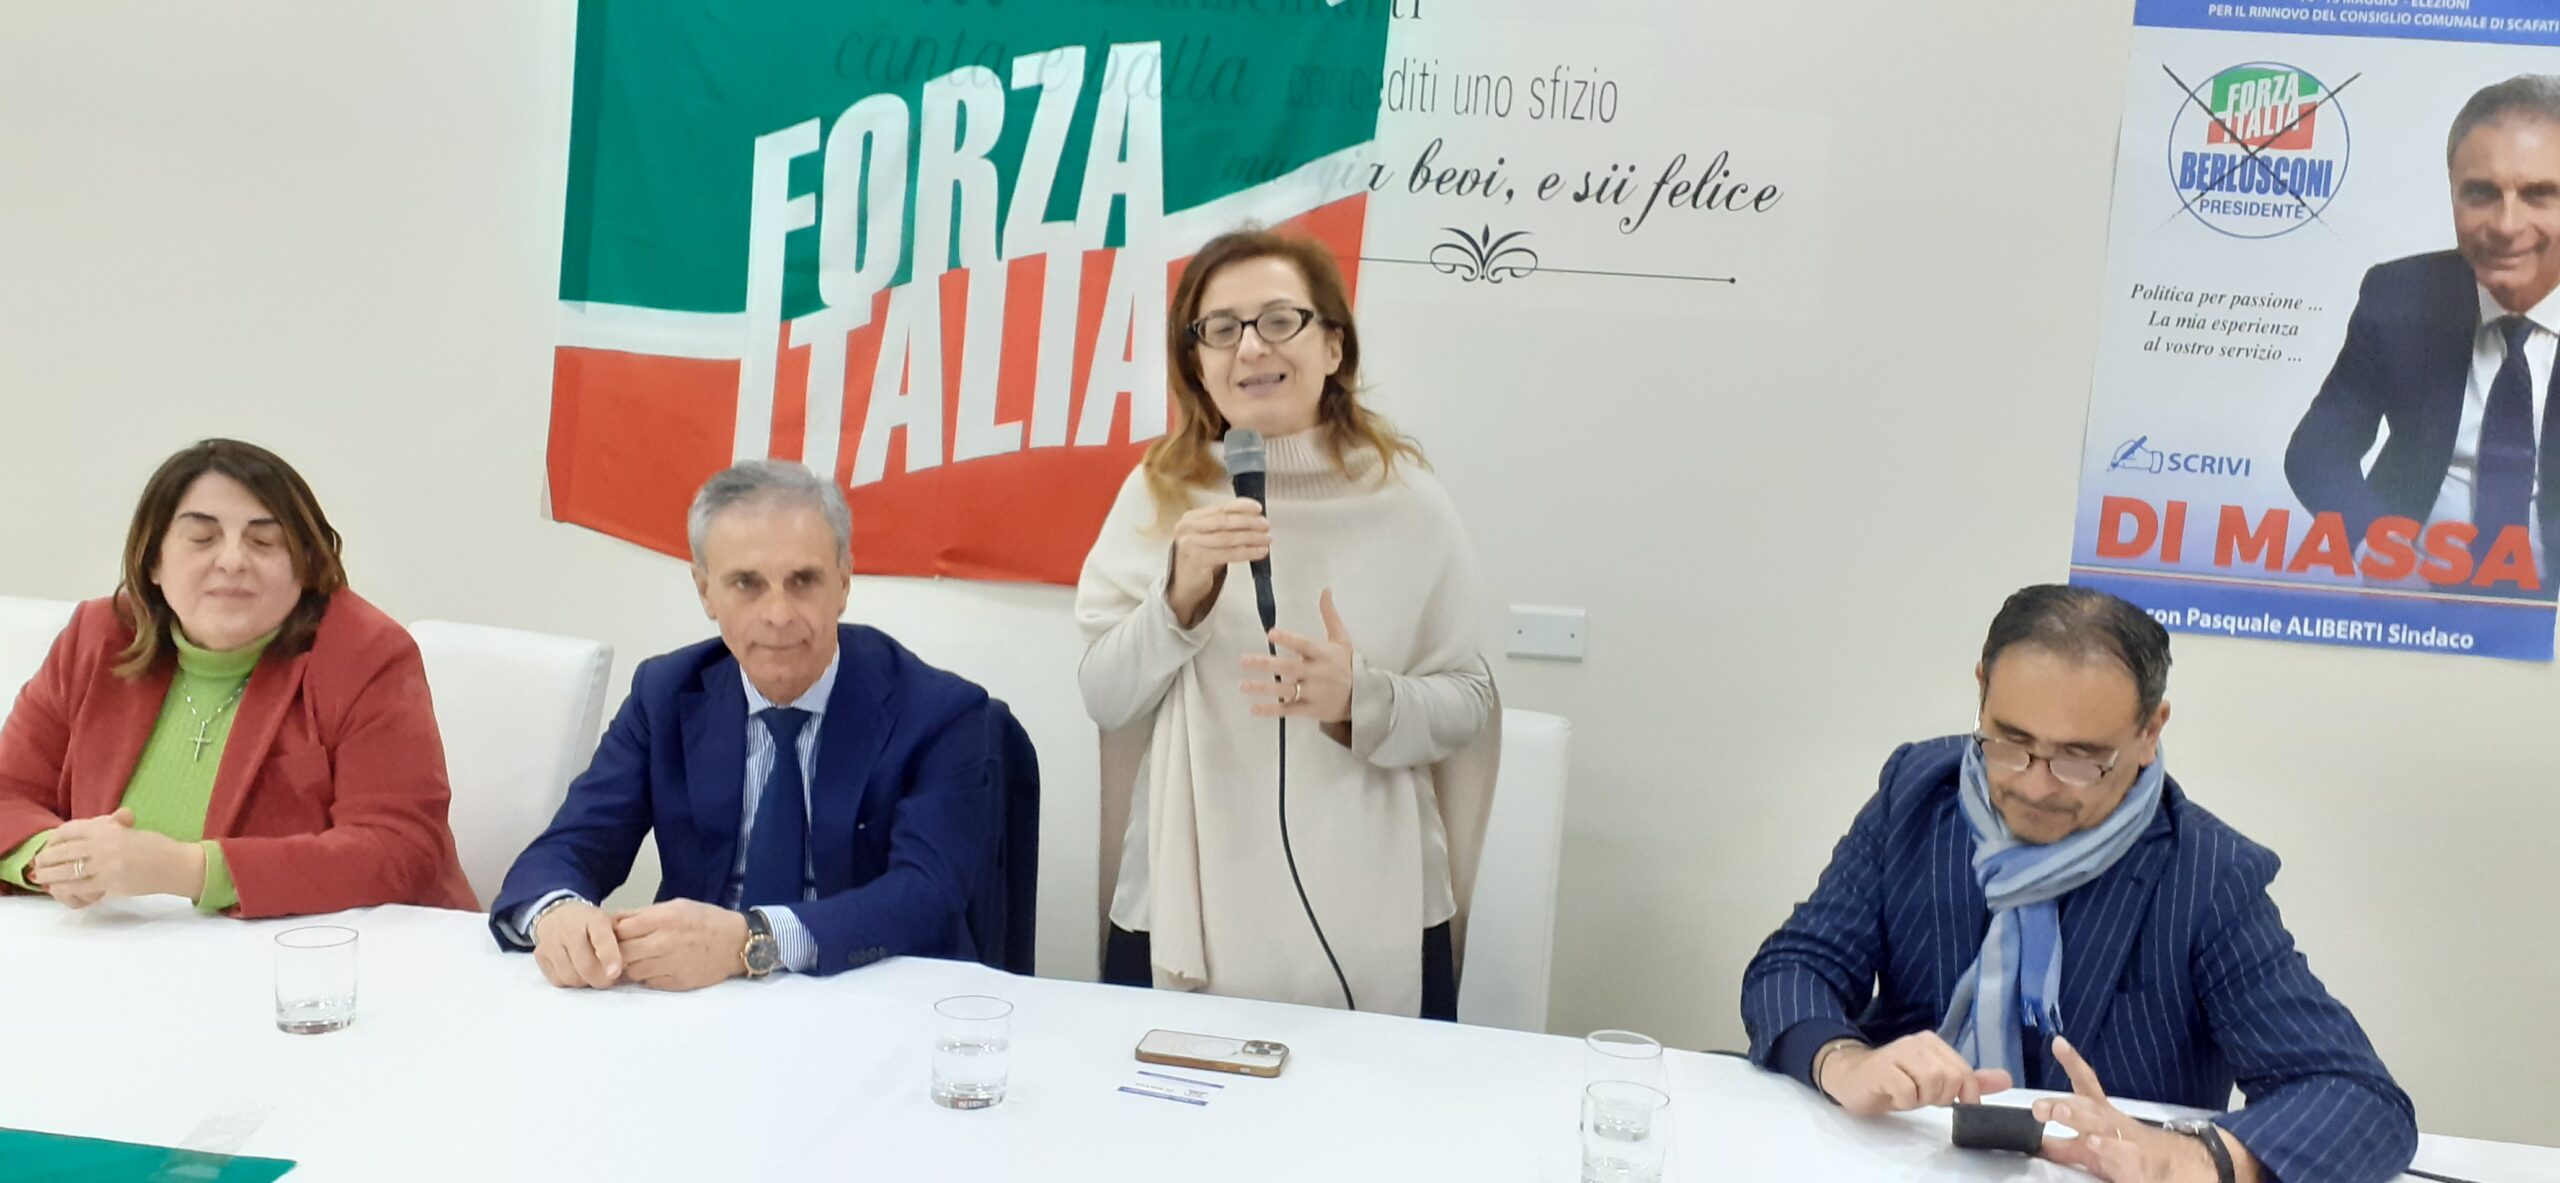 Scafati: FI, Amministrative, Alfonso Di Massa in lista con candidato Sindaco Aliberti per sviluppo imprenditoriale della città